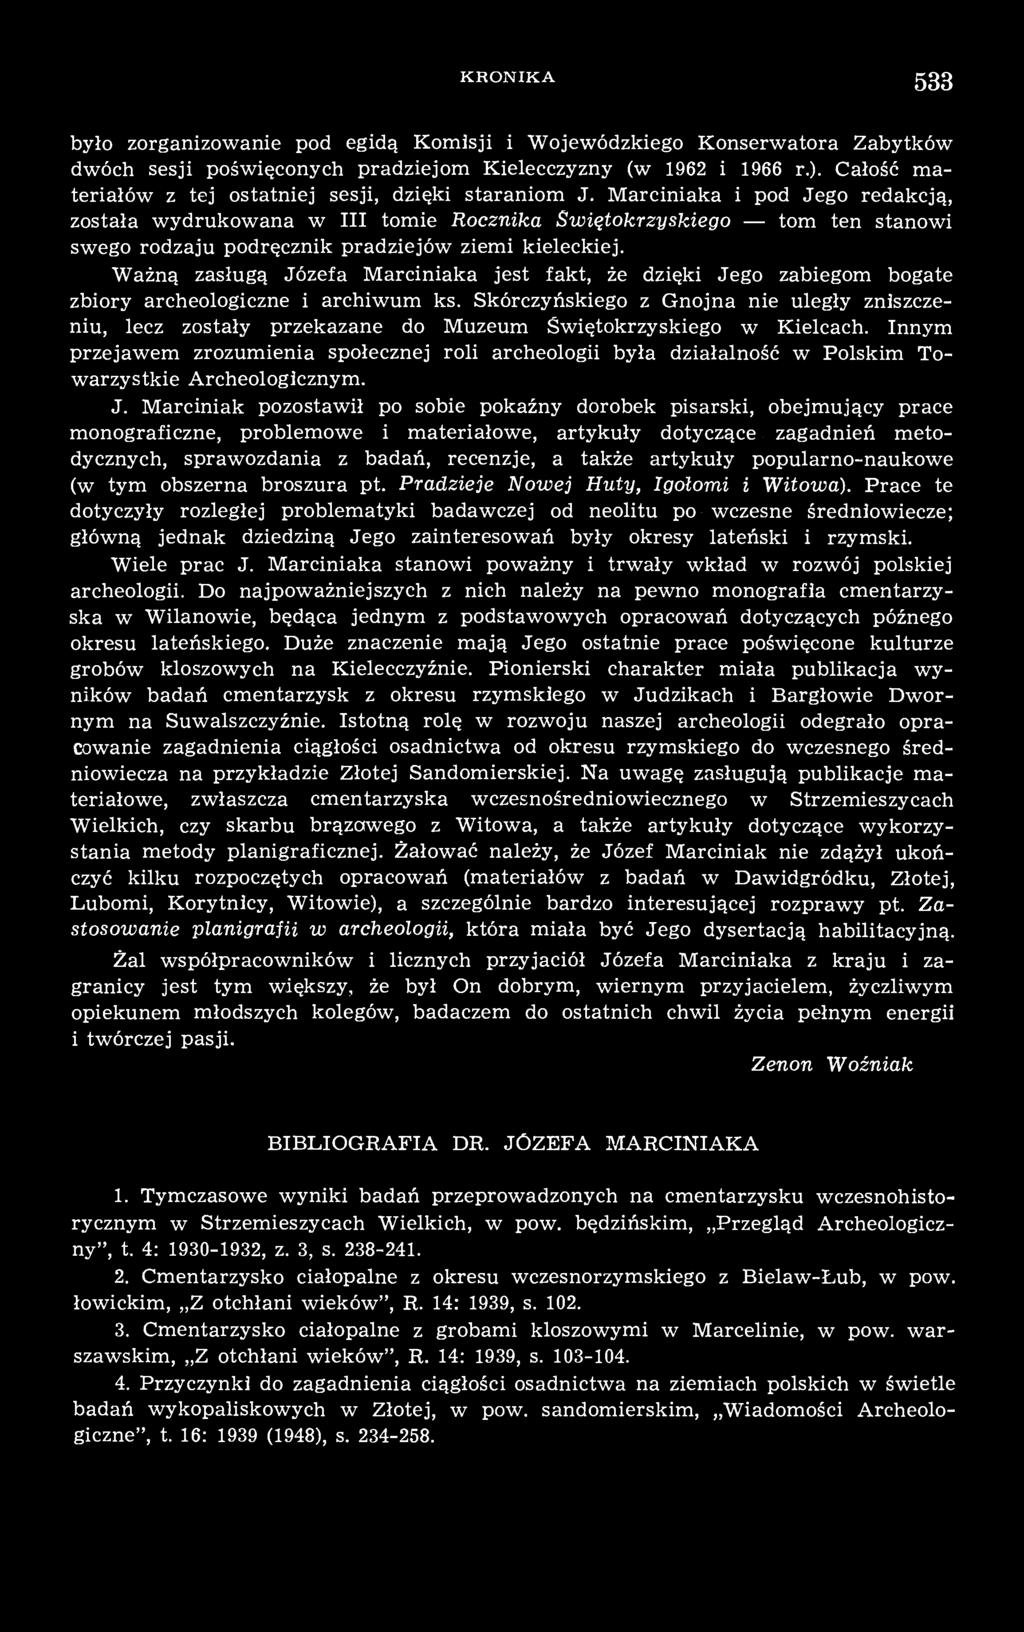 Marciniaka i pod Jego redakcją, została wydrukowana w III tomie Rocznika Świętokrzyskiego tom ten stanowi swego rodzaju podręcznik pradziejów ziemi kieleckiej.